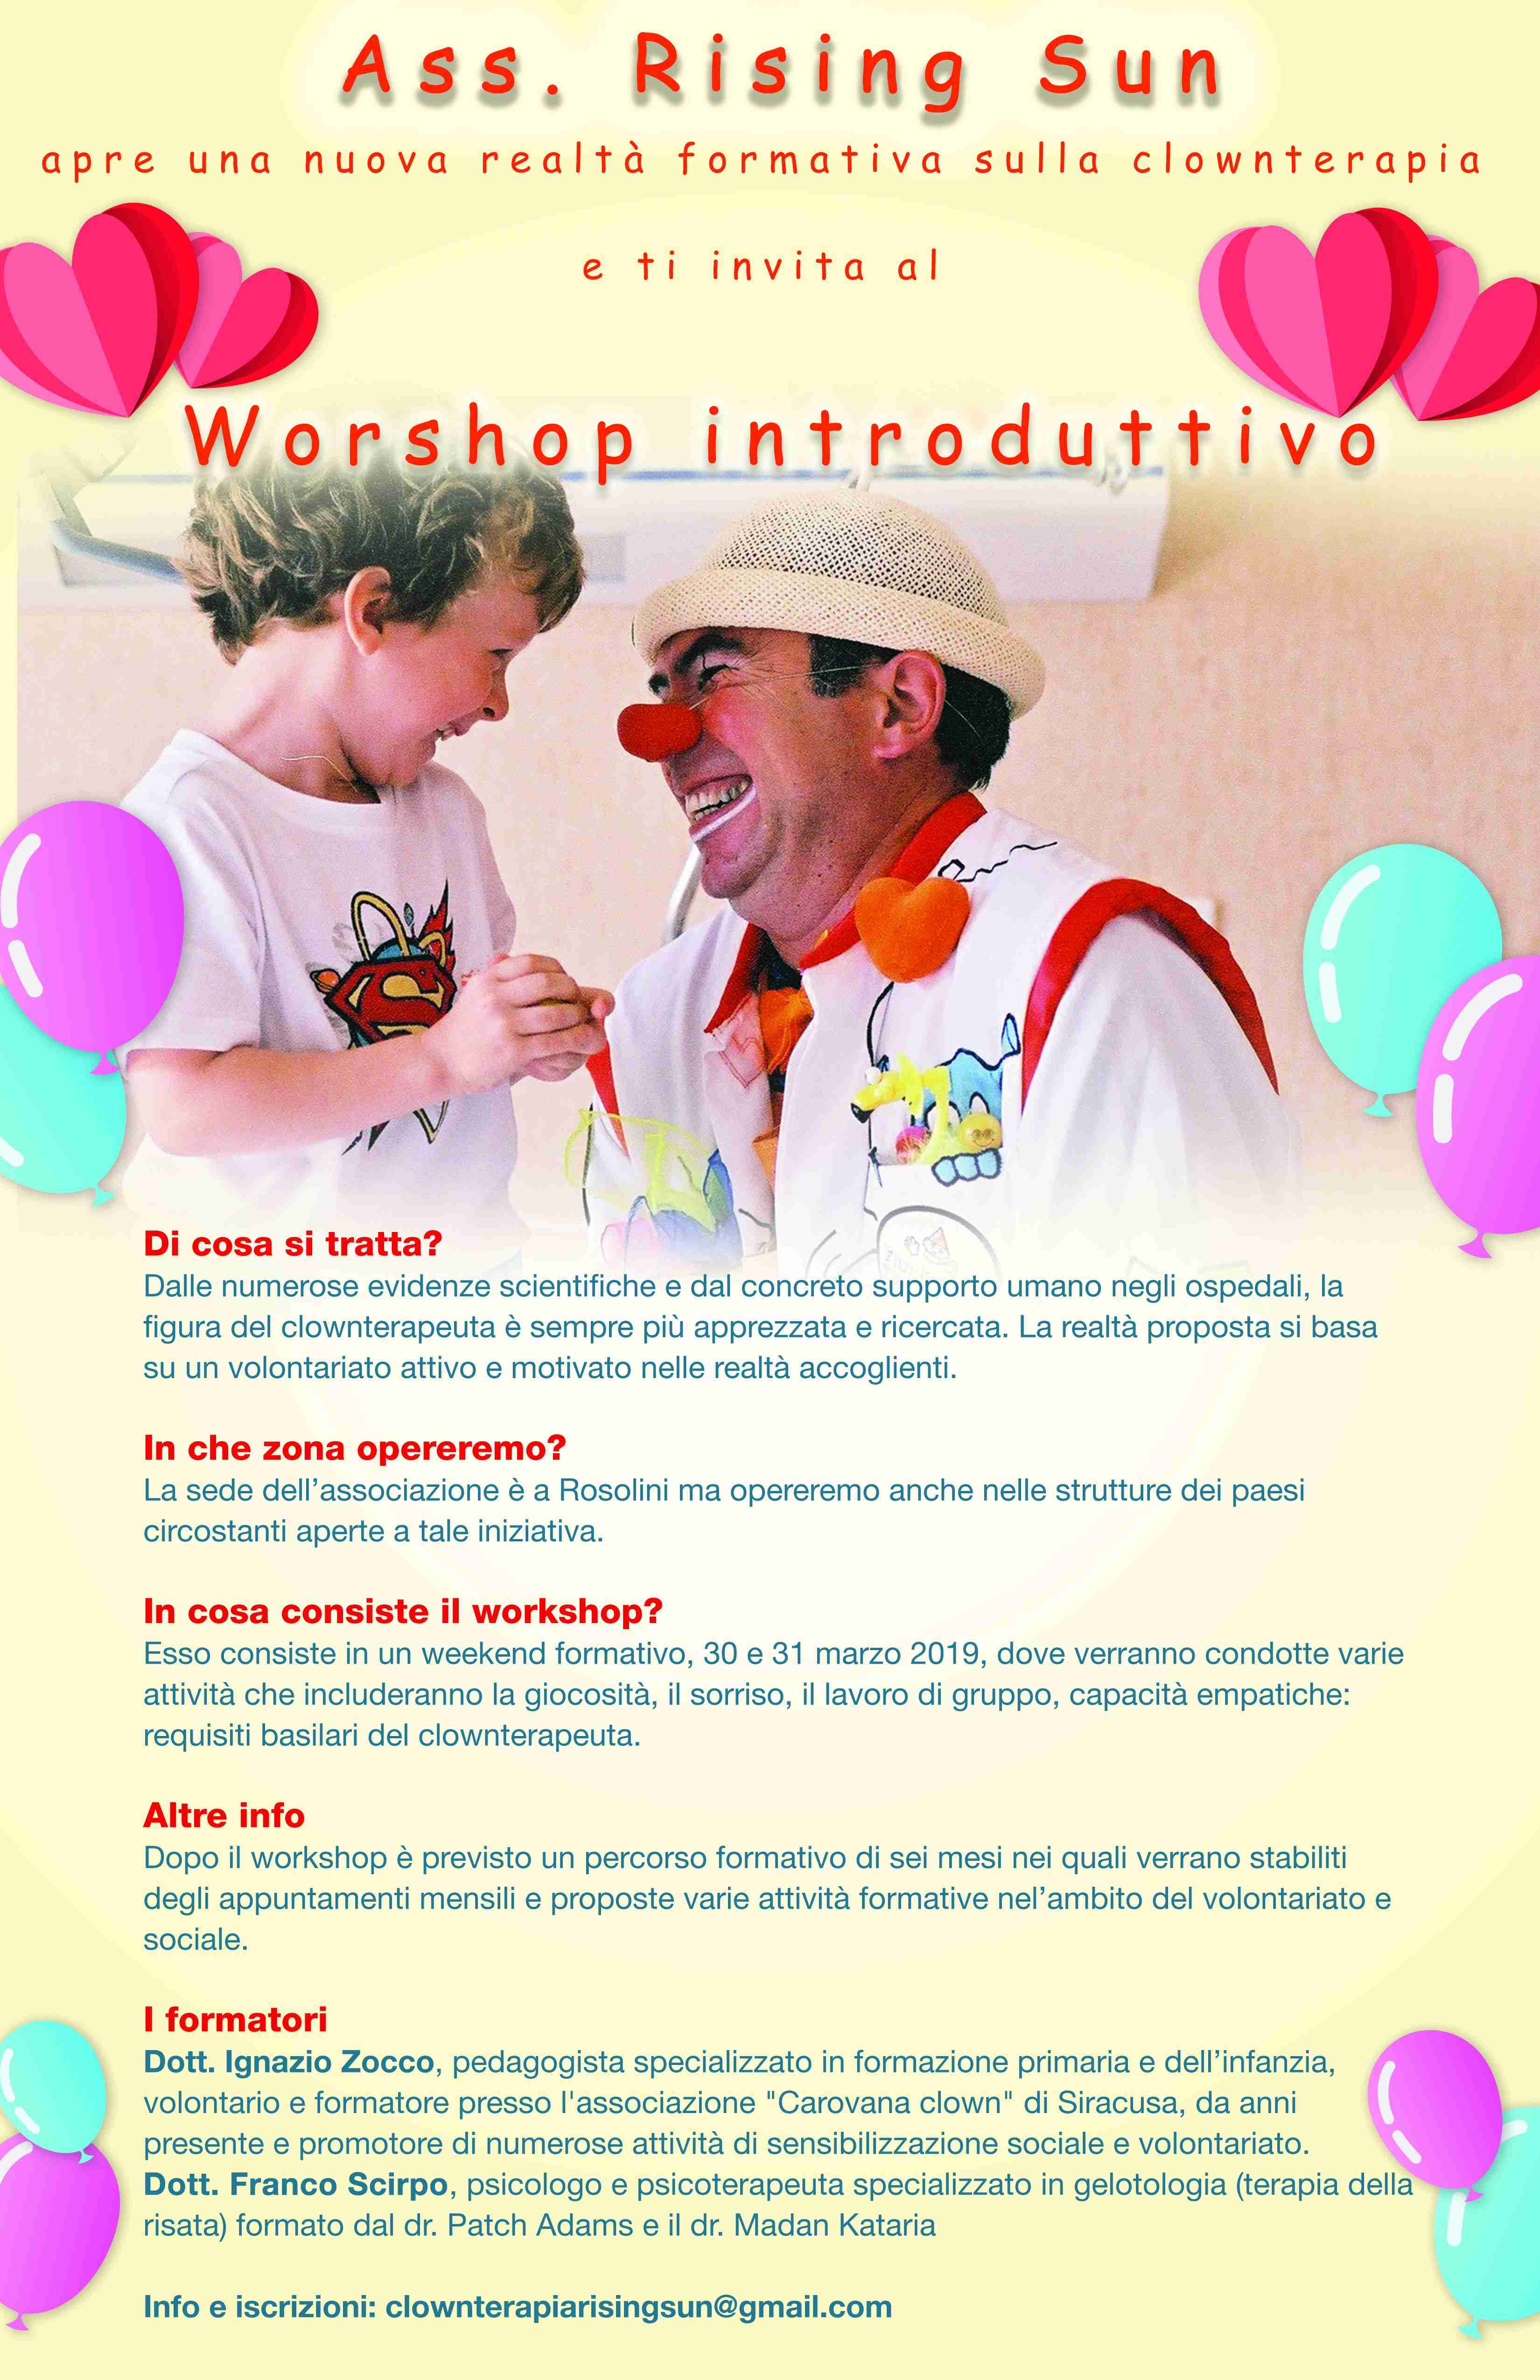 Workshop di Clownterapia promosso dall’Ass. Rising Sun: info e iscrizioni